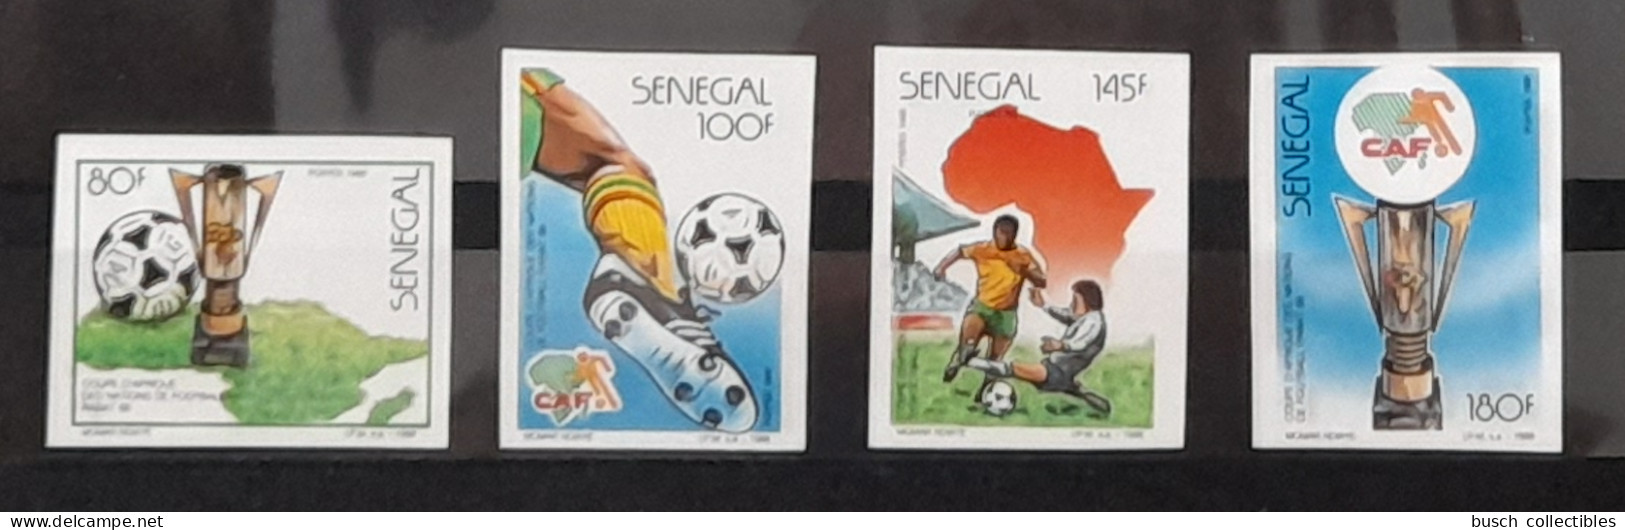 Sénégal 1988 Mi. 973 - 976 IMPERF ND Football Fußball Soccer CAF CAN Coupe D'Afrique Des Nations Rabat Maroc - Copa Africana De Naciones